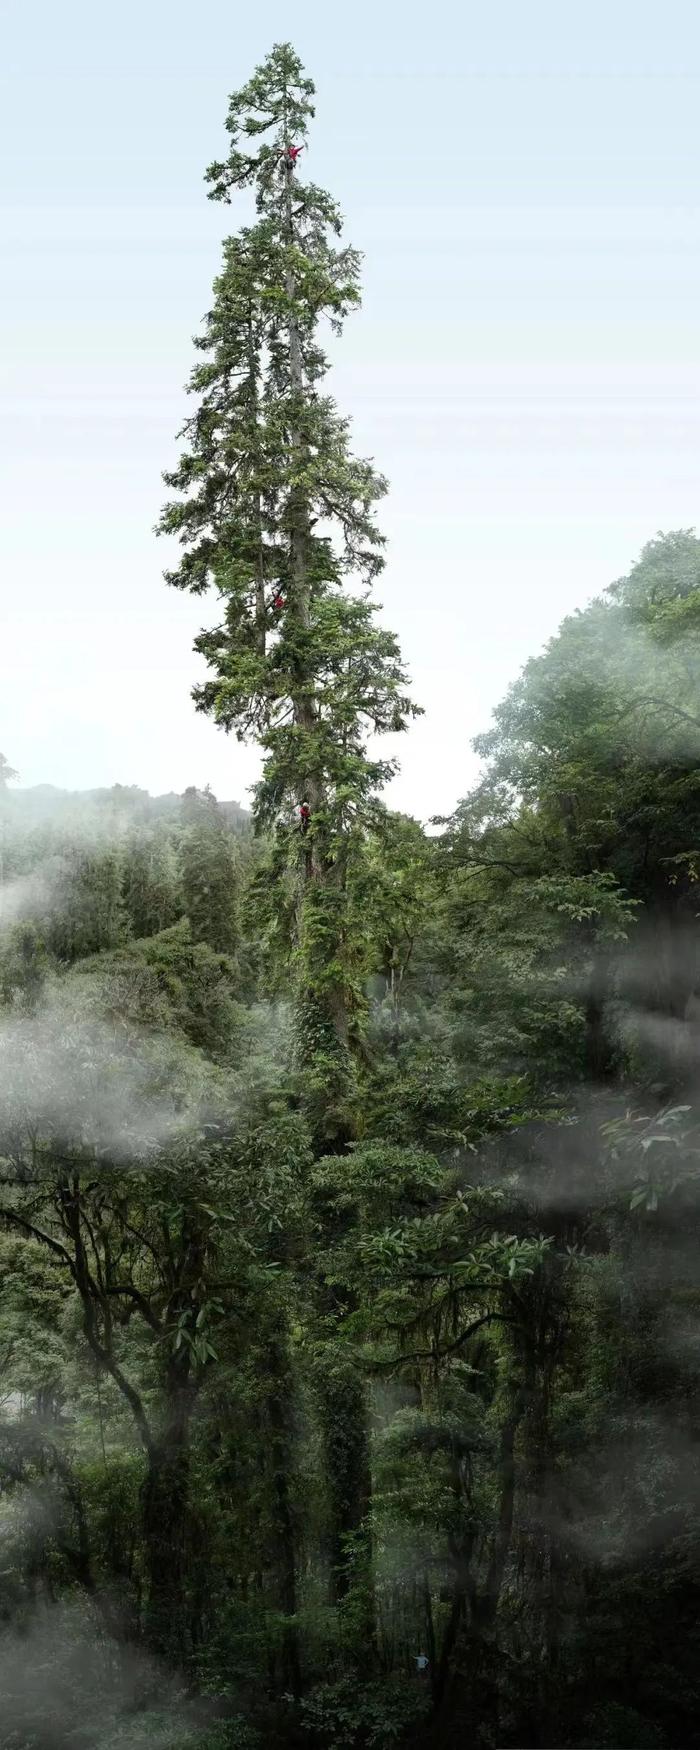 中国巨树云南黄果冷杉等身照，高度83.4米。摄影及合成：“野性中国”工作室